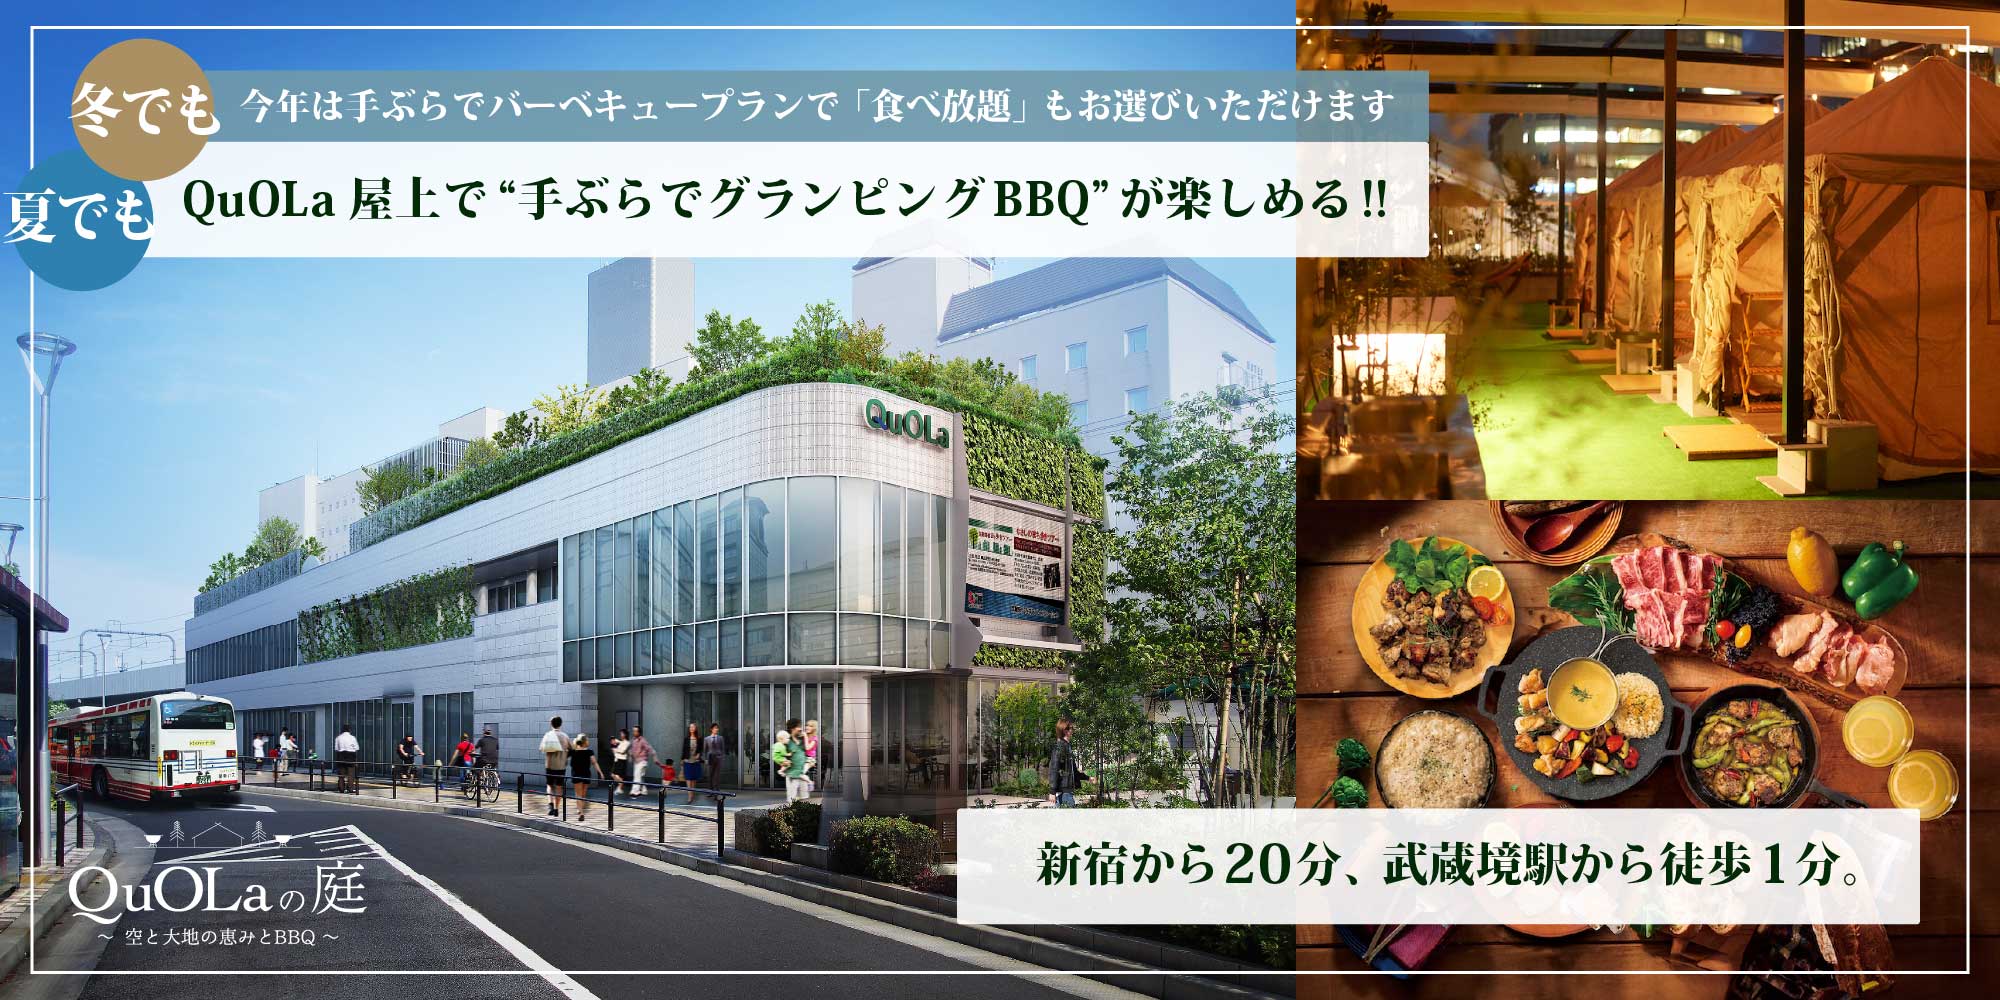 夏でも冬でも QuOLa屋上で「手ぶらでグランピングBBQ」が楽しめる!!新宿から20分、武蔵境駅から徒歩1分。